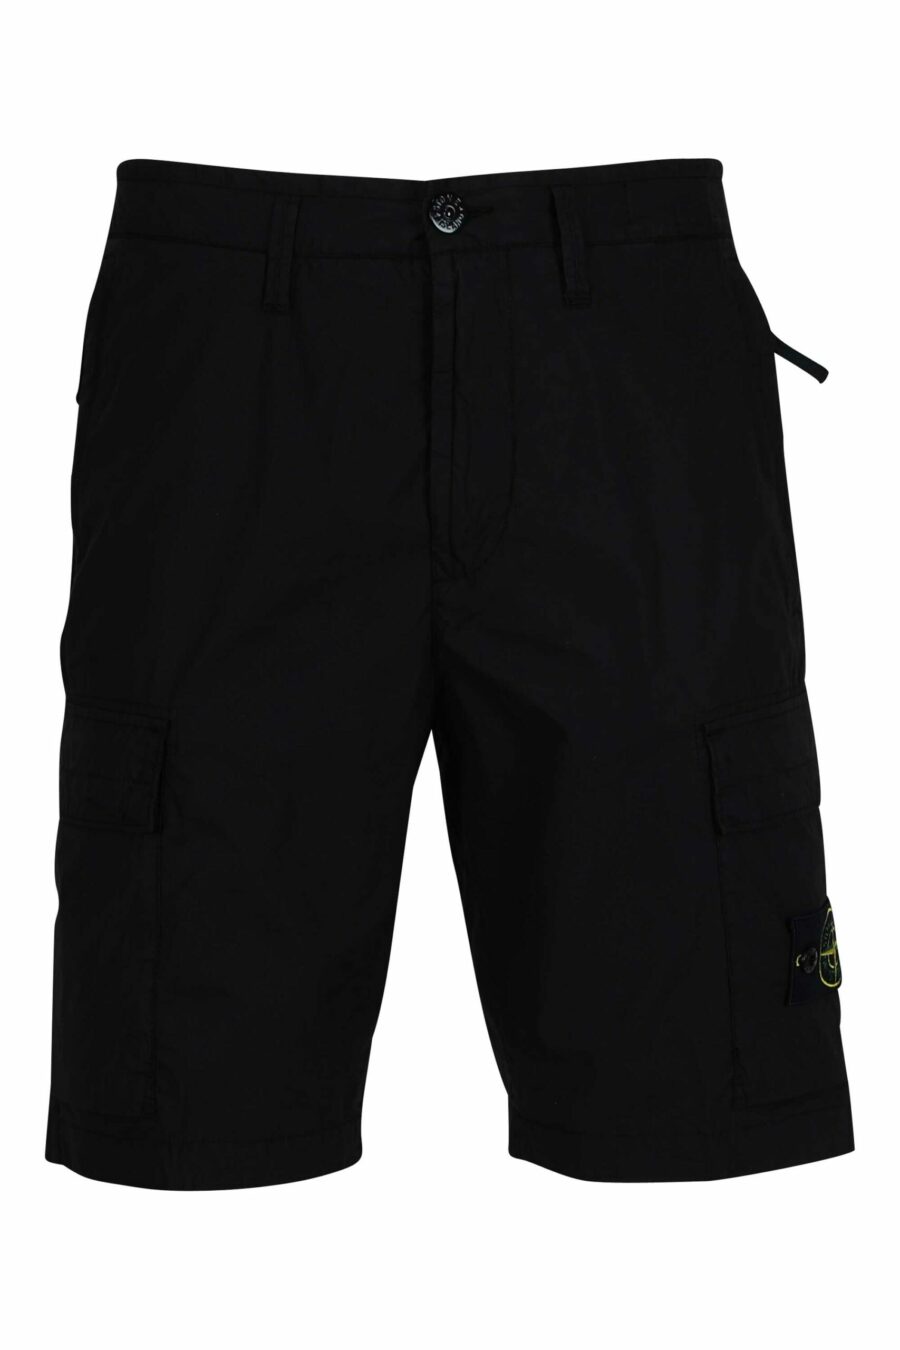 Pantalón corto negro estilo cargo con logo parche brújula - 8052572851193 scaled